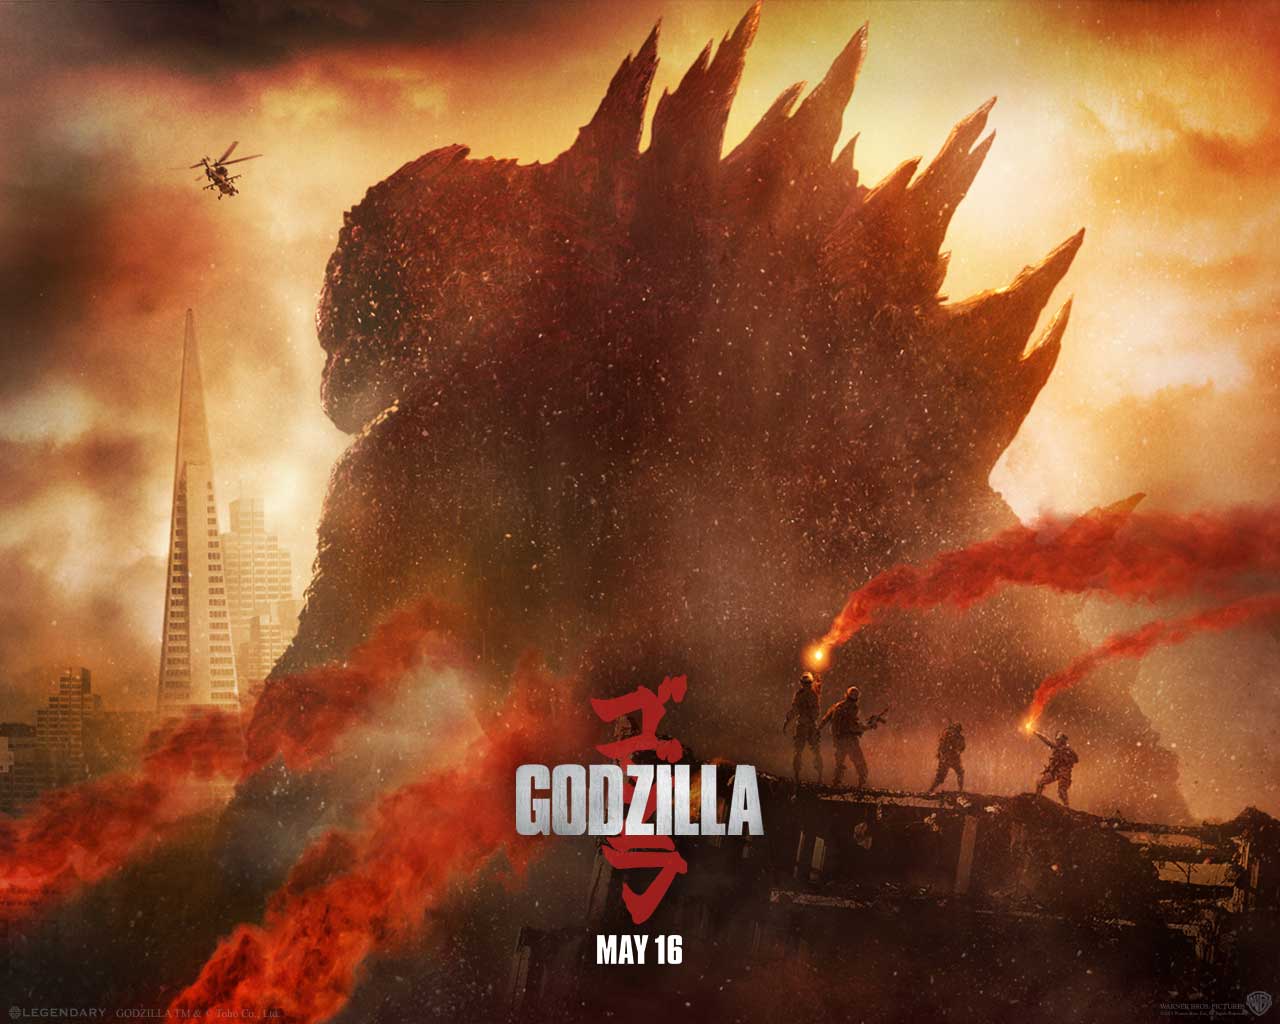 2nd International 'Godzilla' released